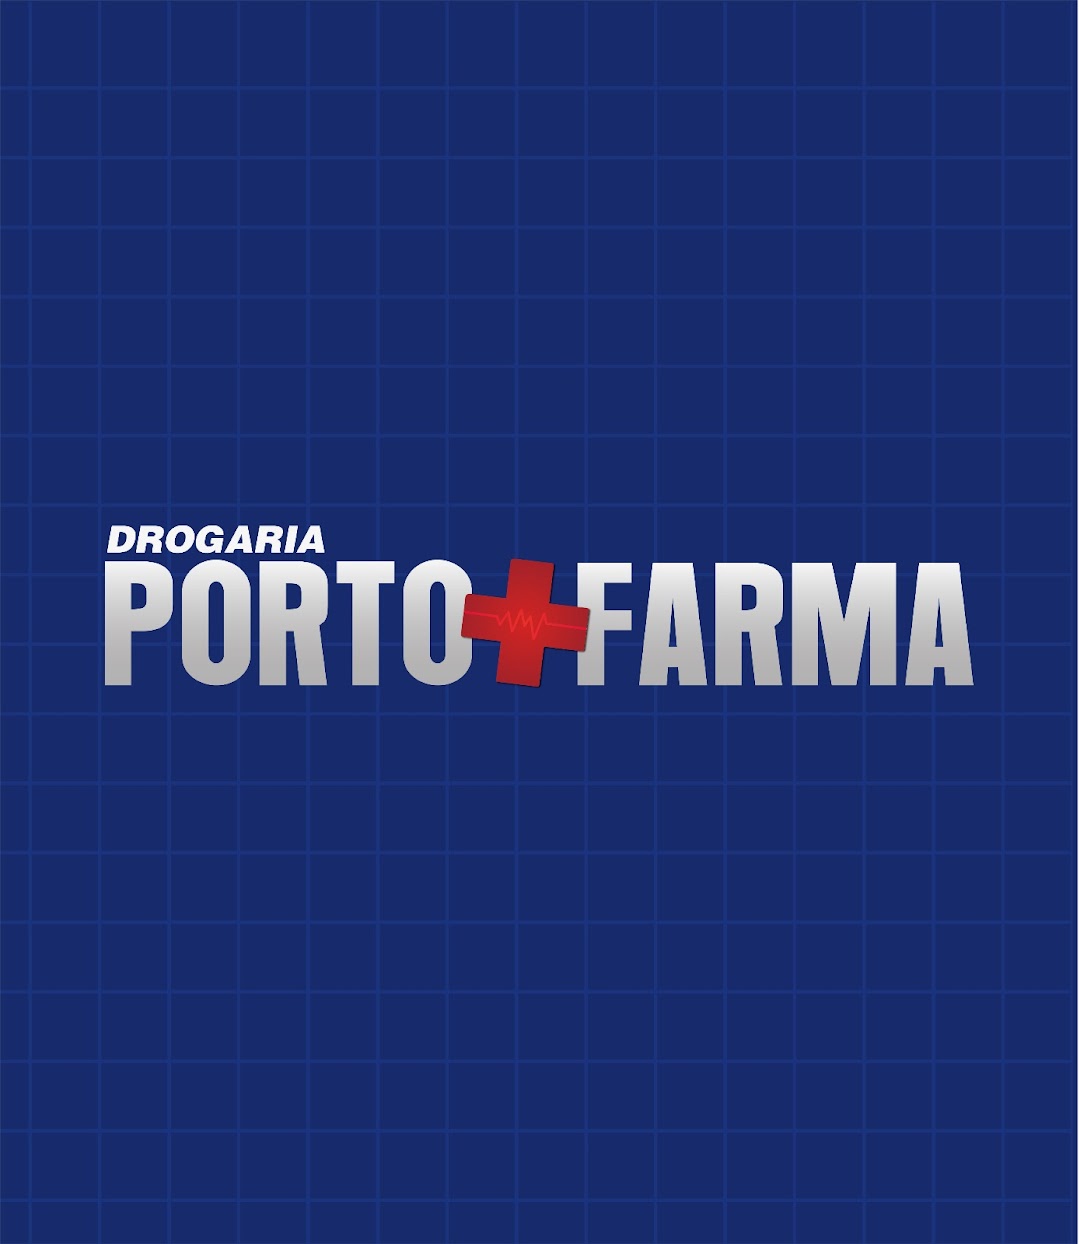 Drogaria PortoFarma